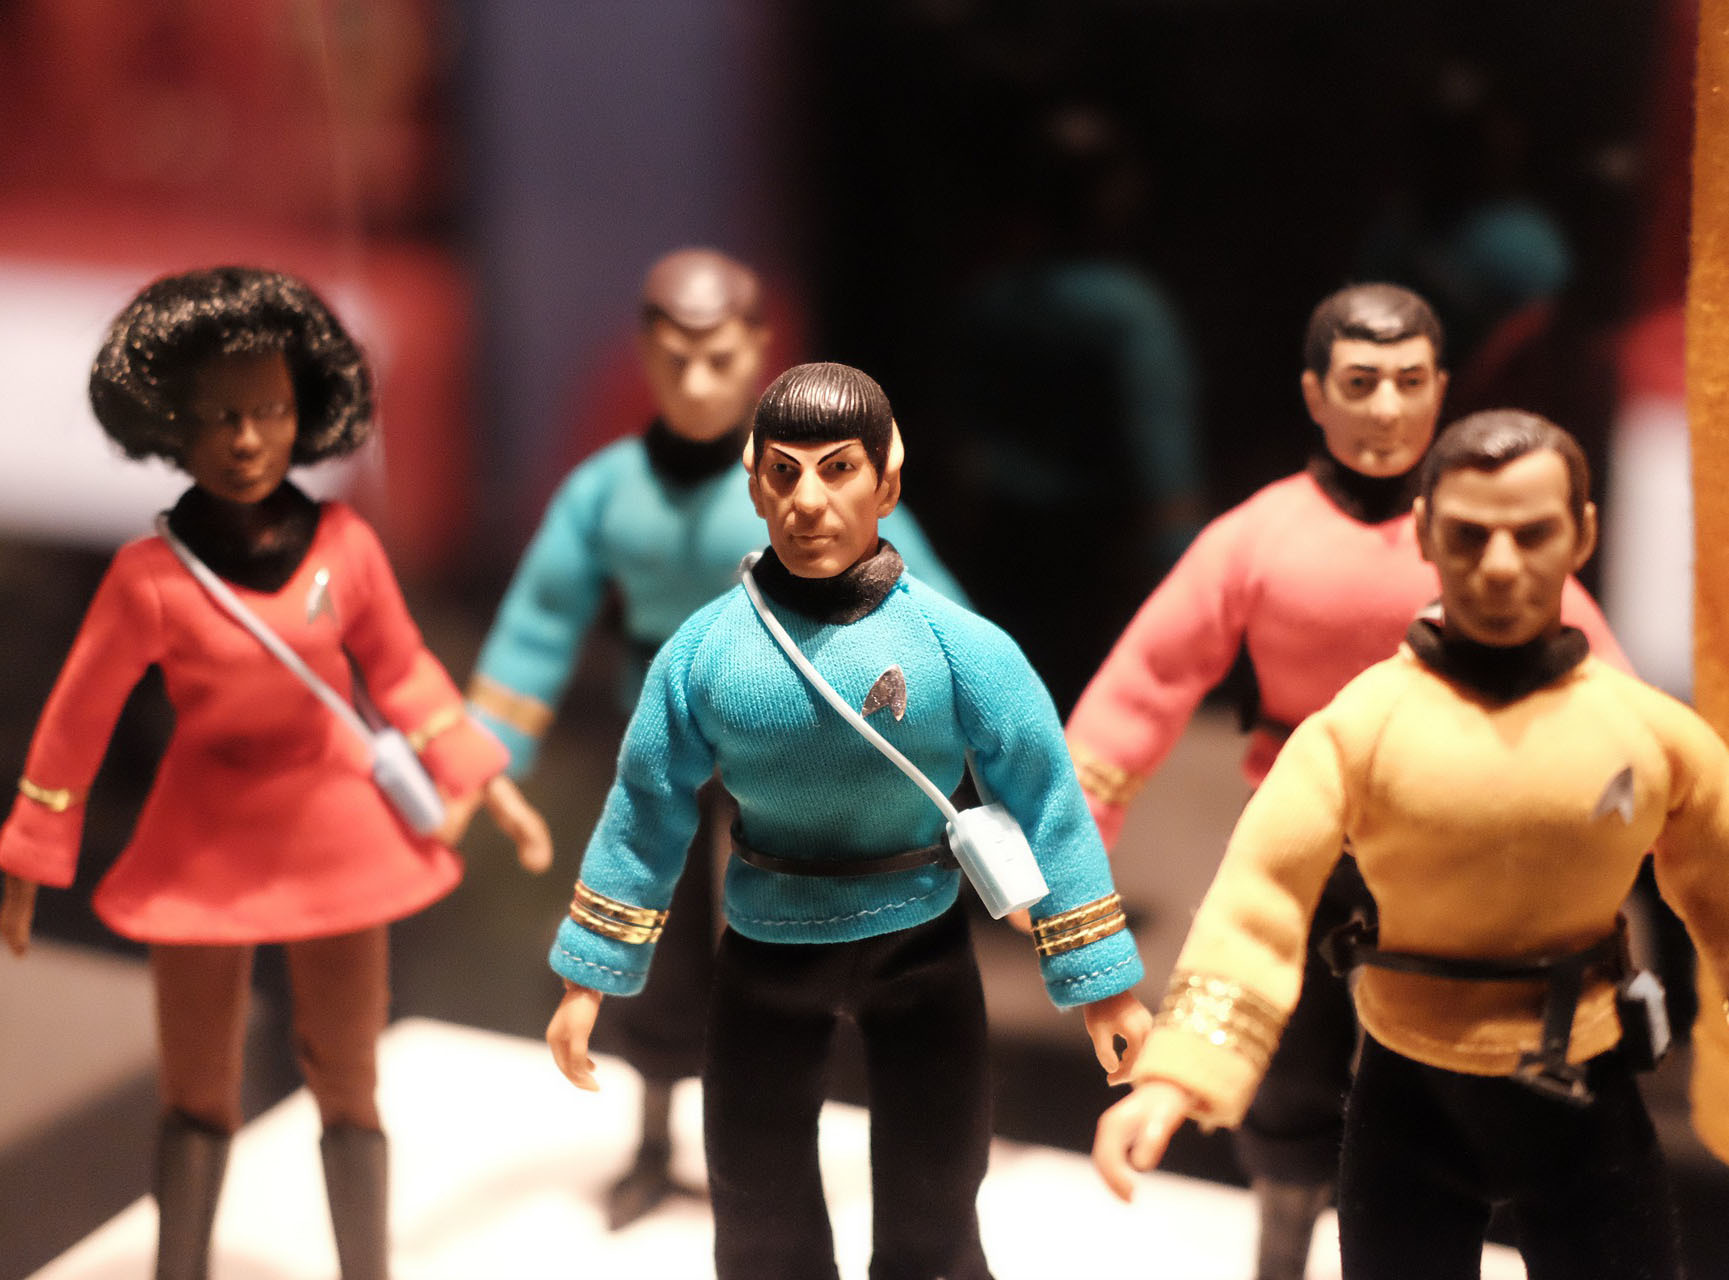 Photo of five Star Trek action figures